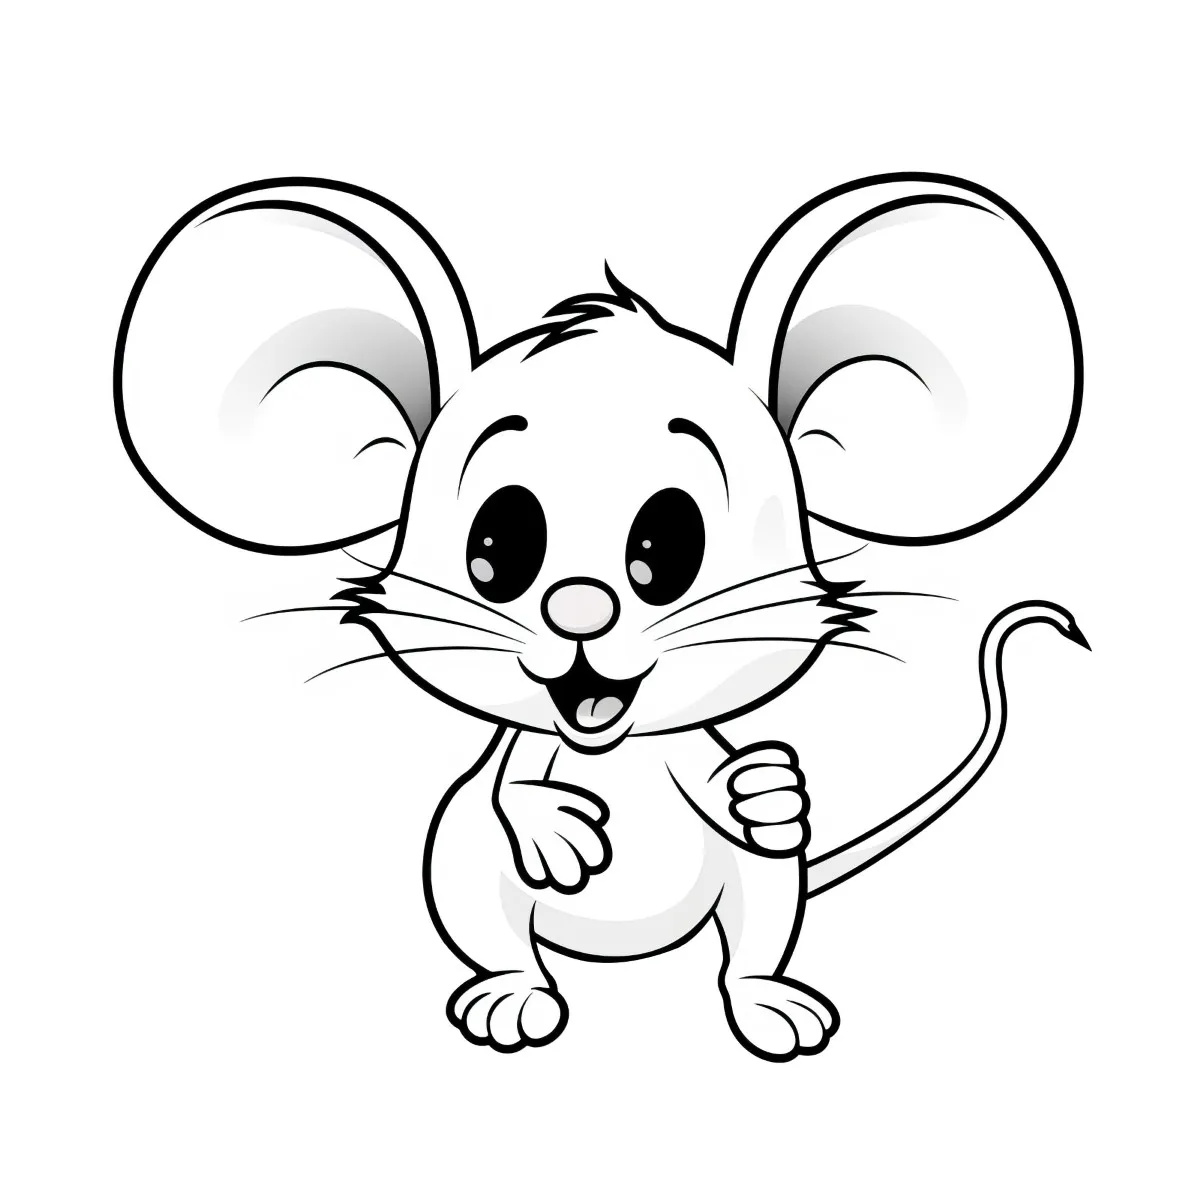 kostenloses Ausmalbild für Kinder Maus